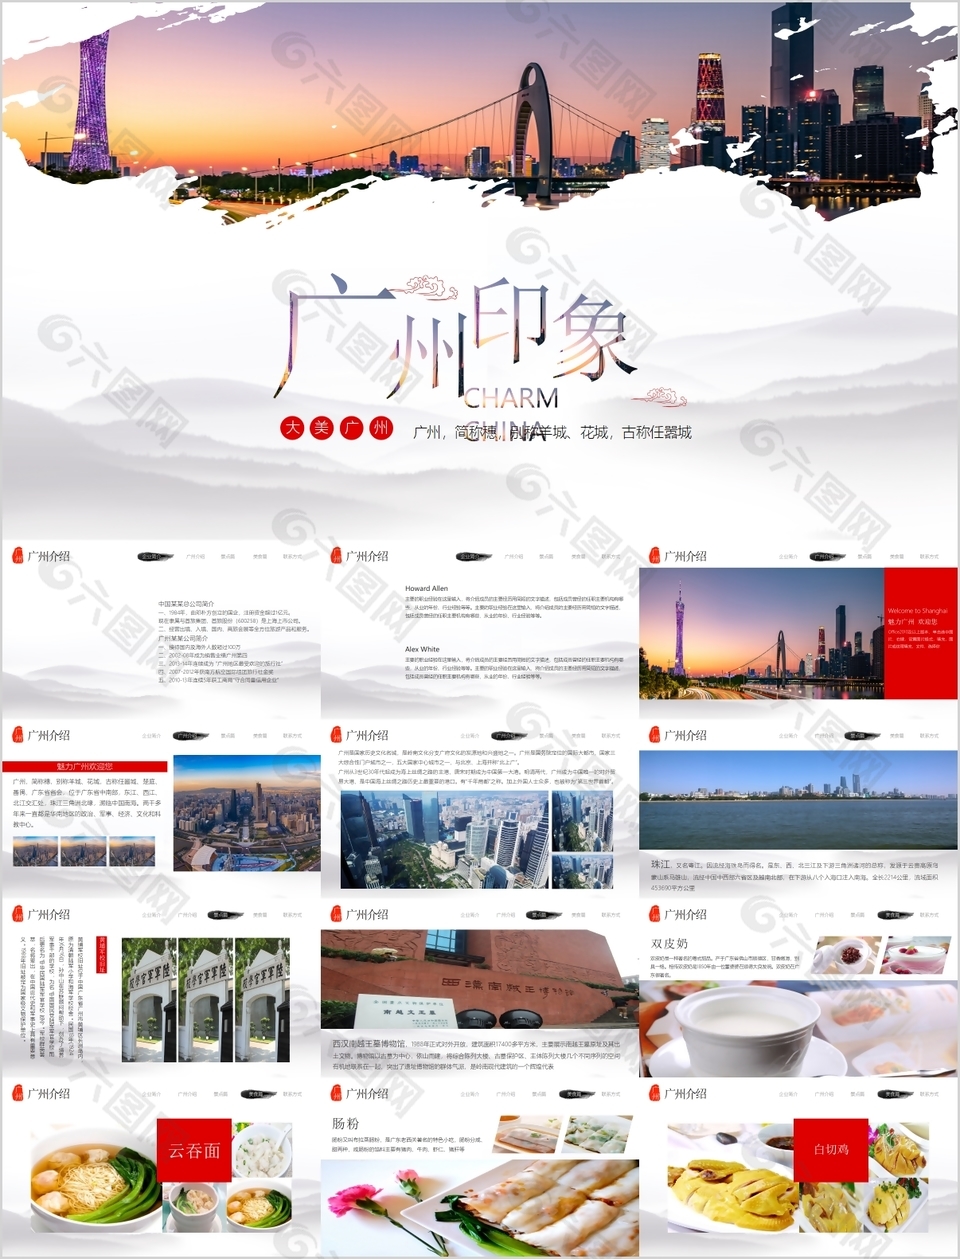 个性创意广州印象旅游宣传介绍PPT模板